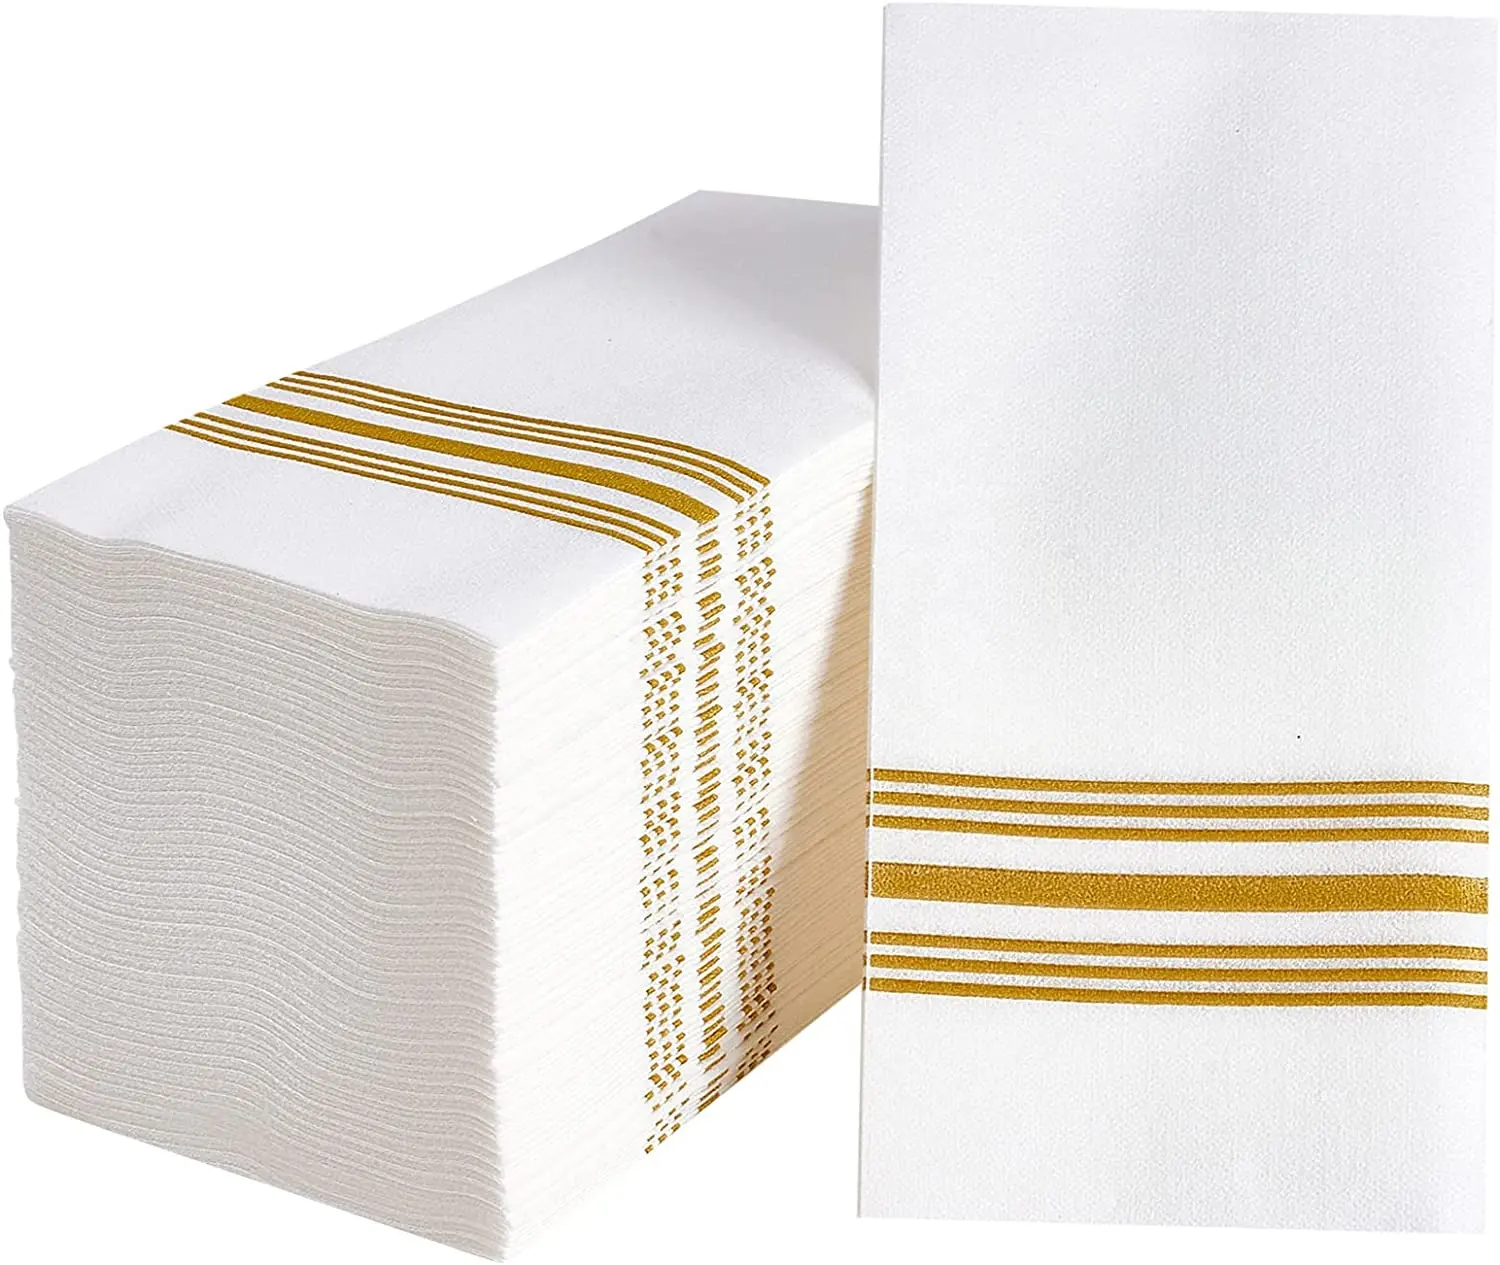 Napkins Guest havlu 30 adet tek kullanımlık el havlusu kağıt peçete dekoratif günlük yemek yıldönümü partisi